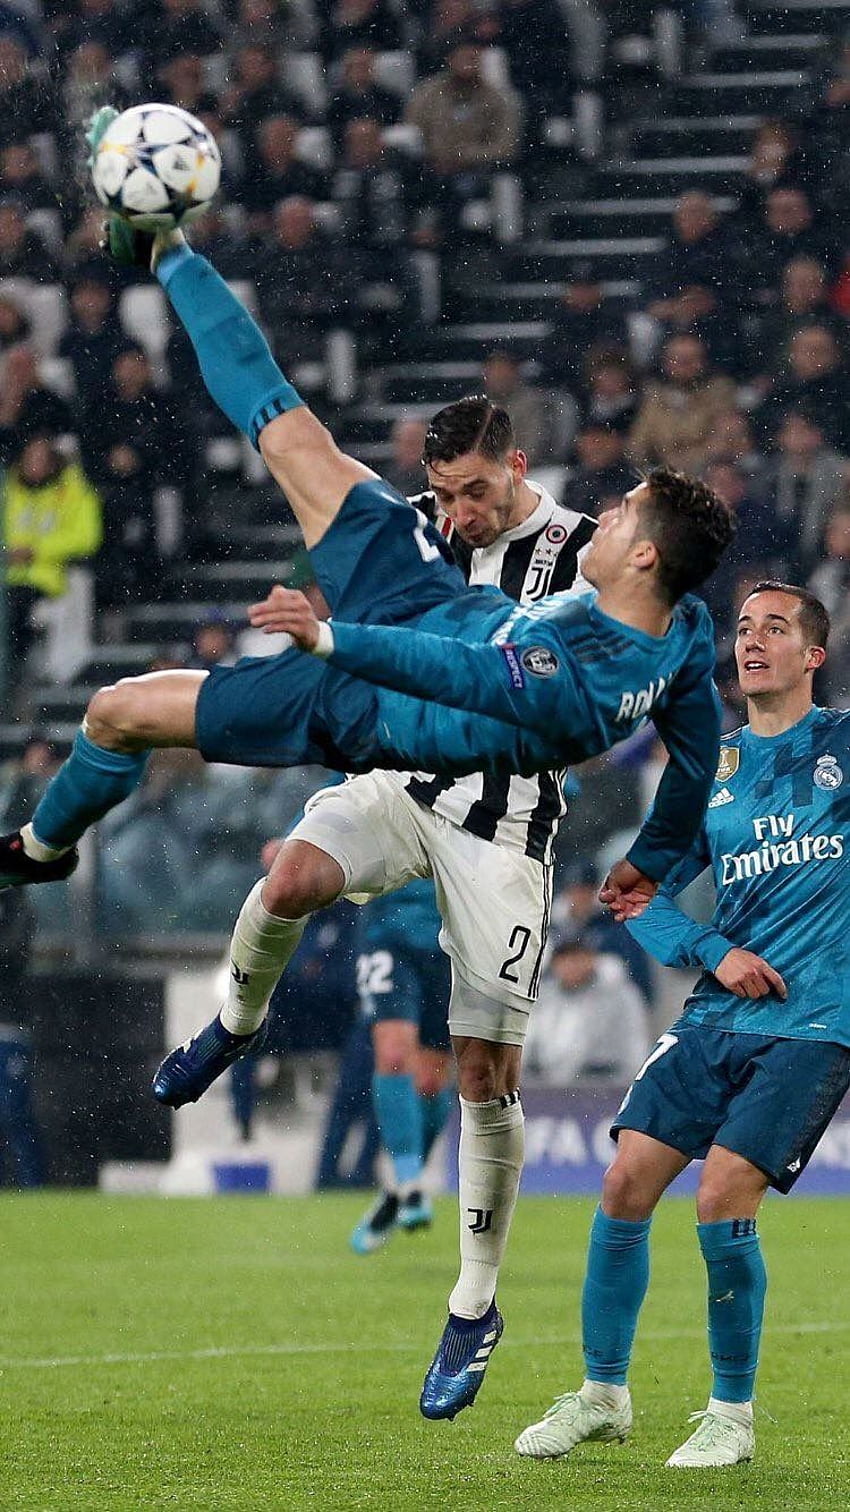 Le coup de pied à couper le souffle de Ronaldo contre la Juventus, qui a été suivi d'un classement écrasant. Ronaldo buts, Cristiano ronaldo juventus, Ronaldo football, Cristiano Ronaldo Goal Fond d'écran de téléphone HD